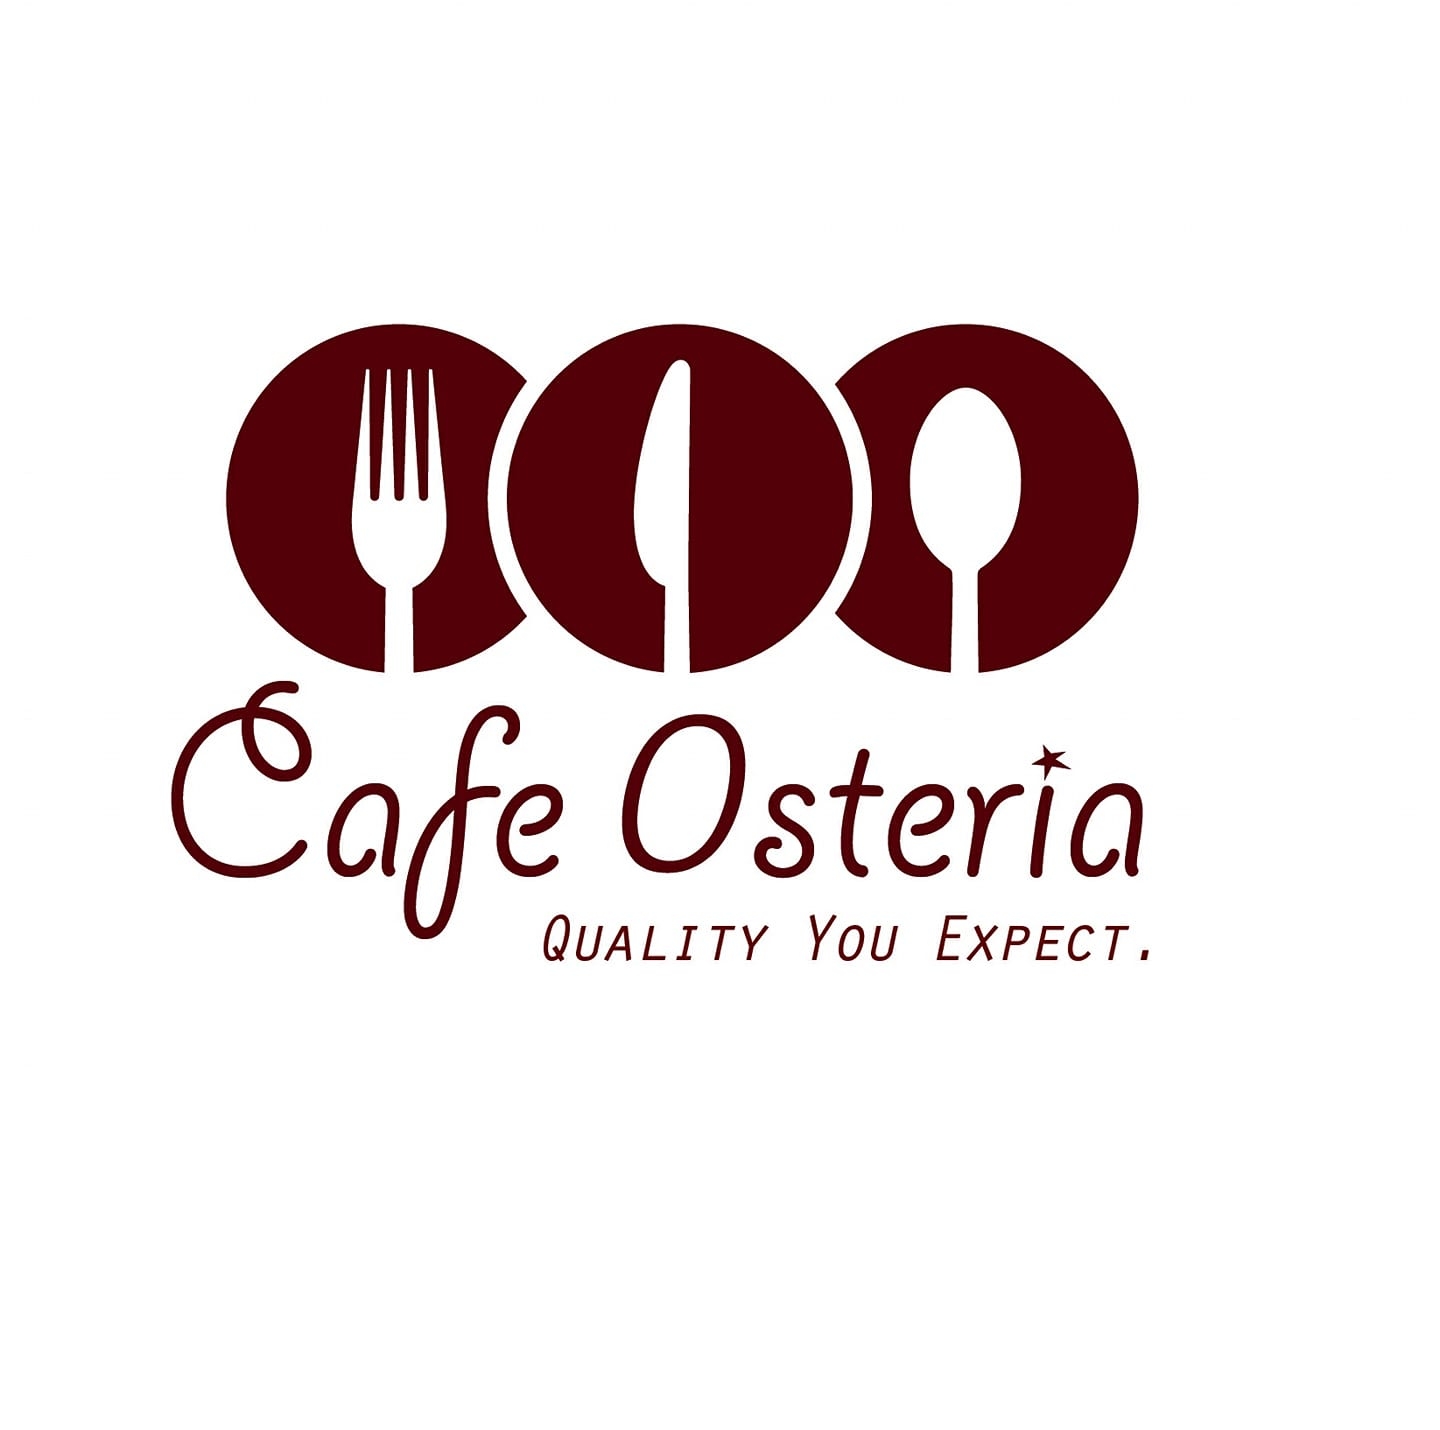 Cafe Osteria